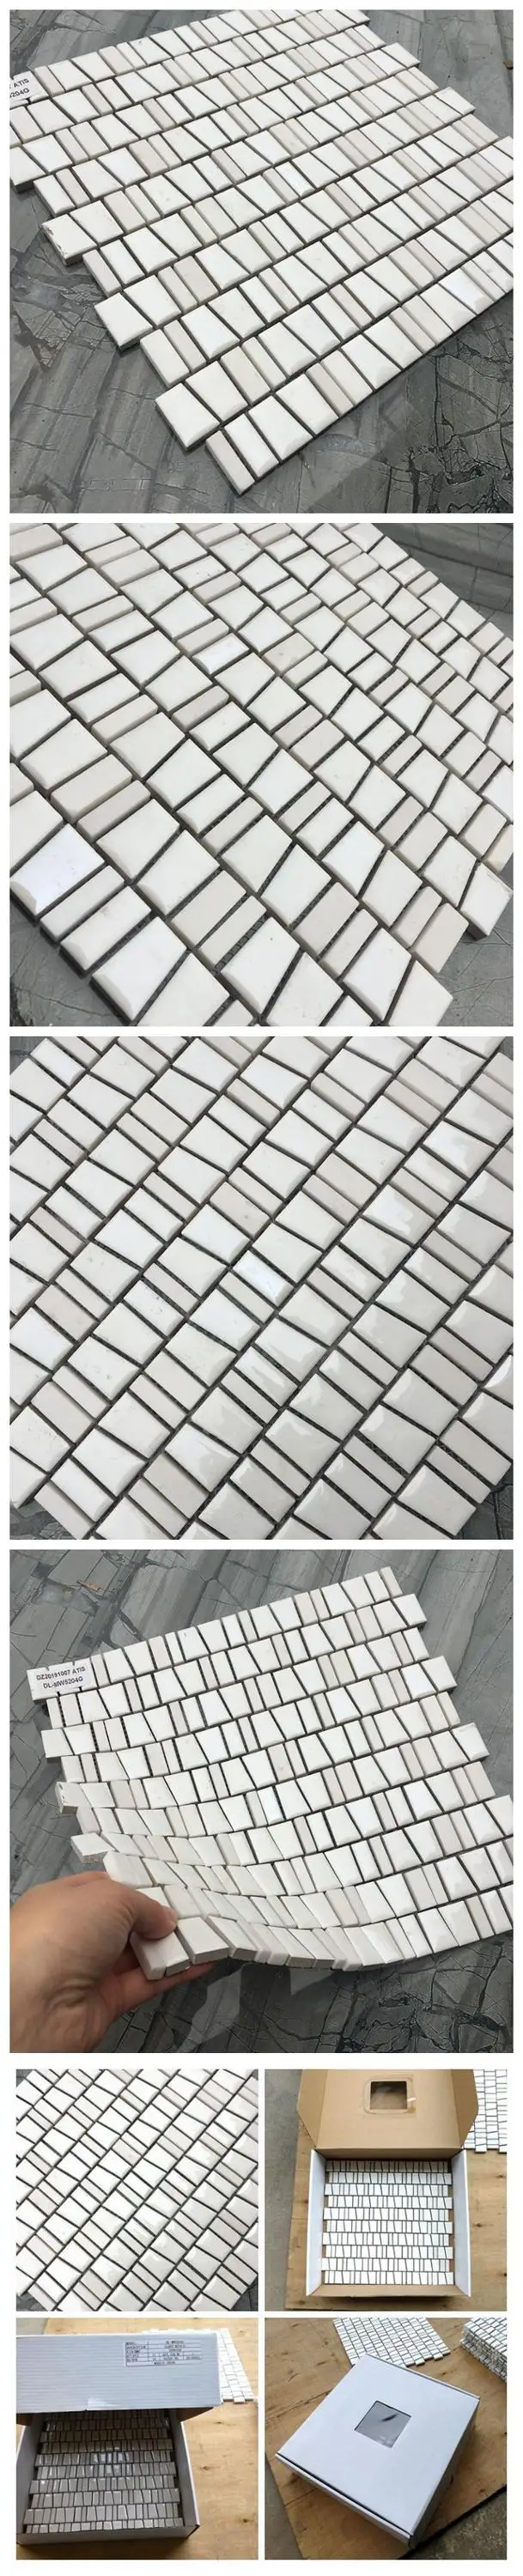 Горячая продажа белой керамической и каменной мозаики для ванной комнаты и кухни Фошань Китай